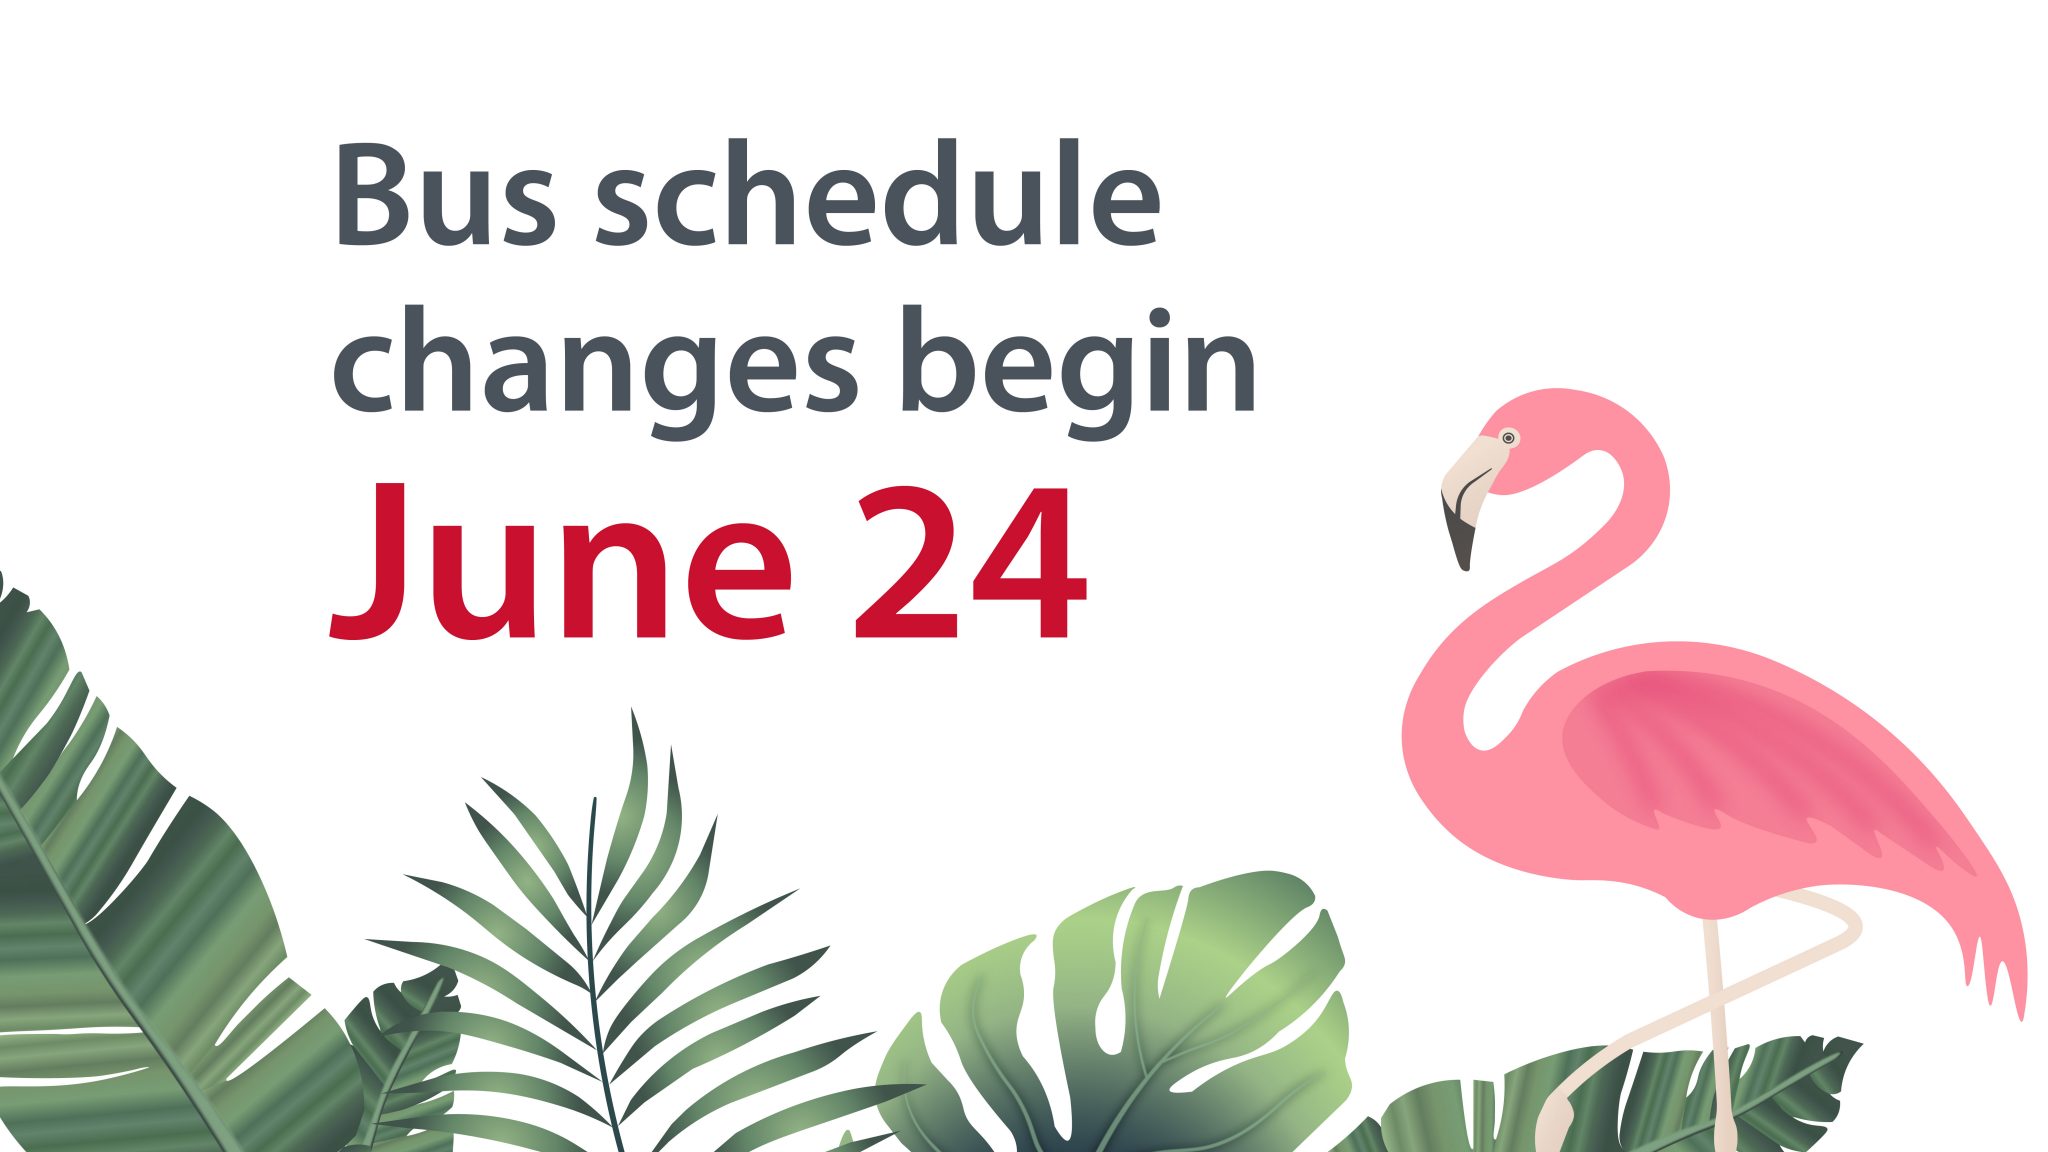 Bus schedule changes begin June 24